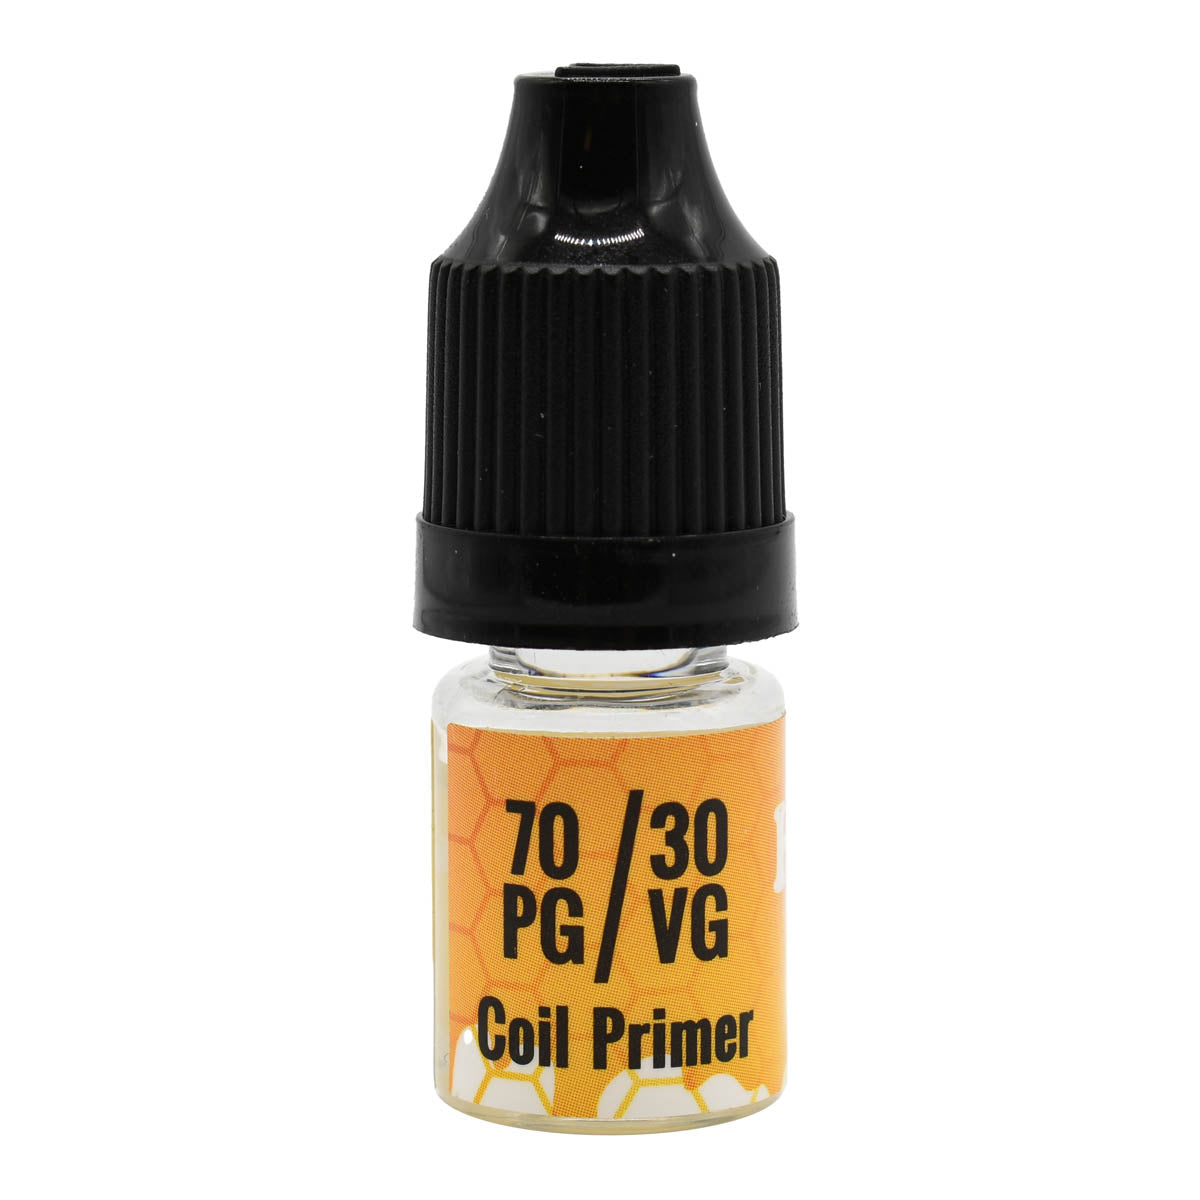 3ml PG/VG Coil Primer Liquid